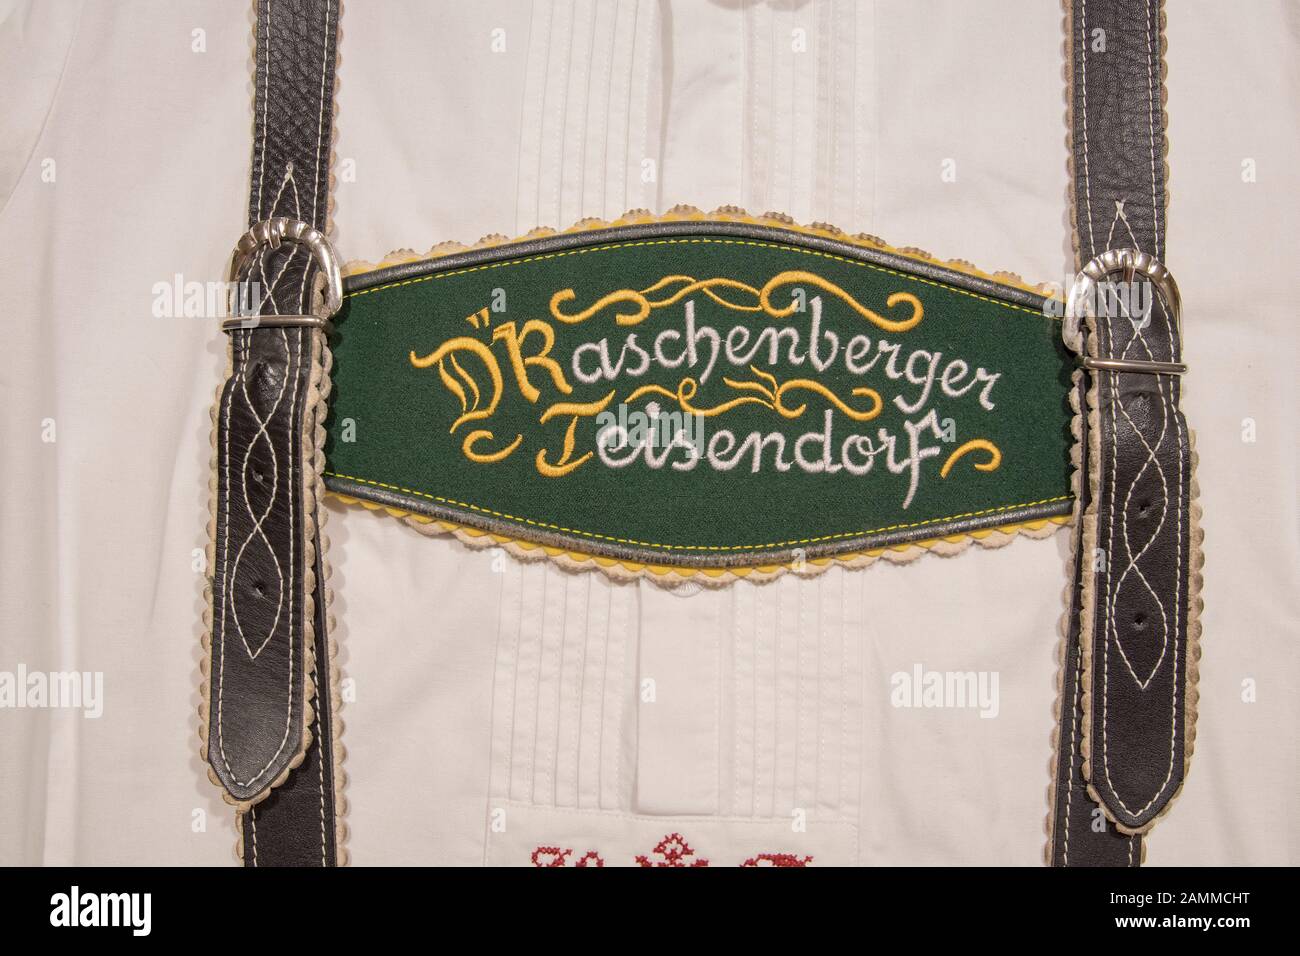 Les accolades de Trachtenverein d'Raschenberger Teisendorf, Berchtesgadener Land, Rupertiwinkel, Haute-Bavière, Allemagne [traduction automatique] Banque D'Images